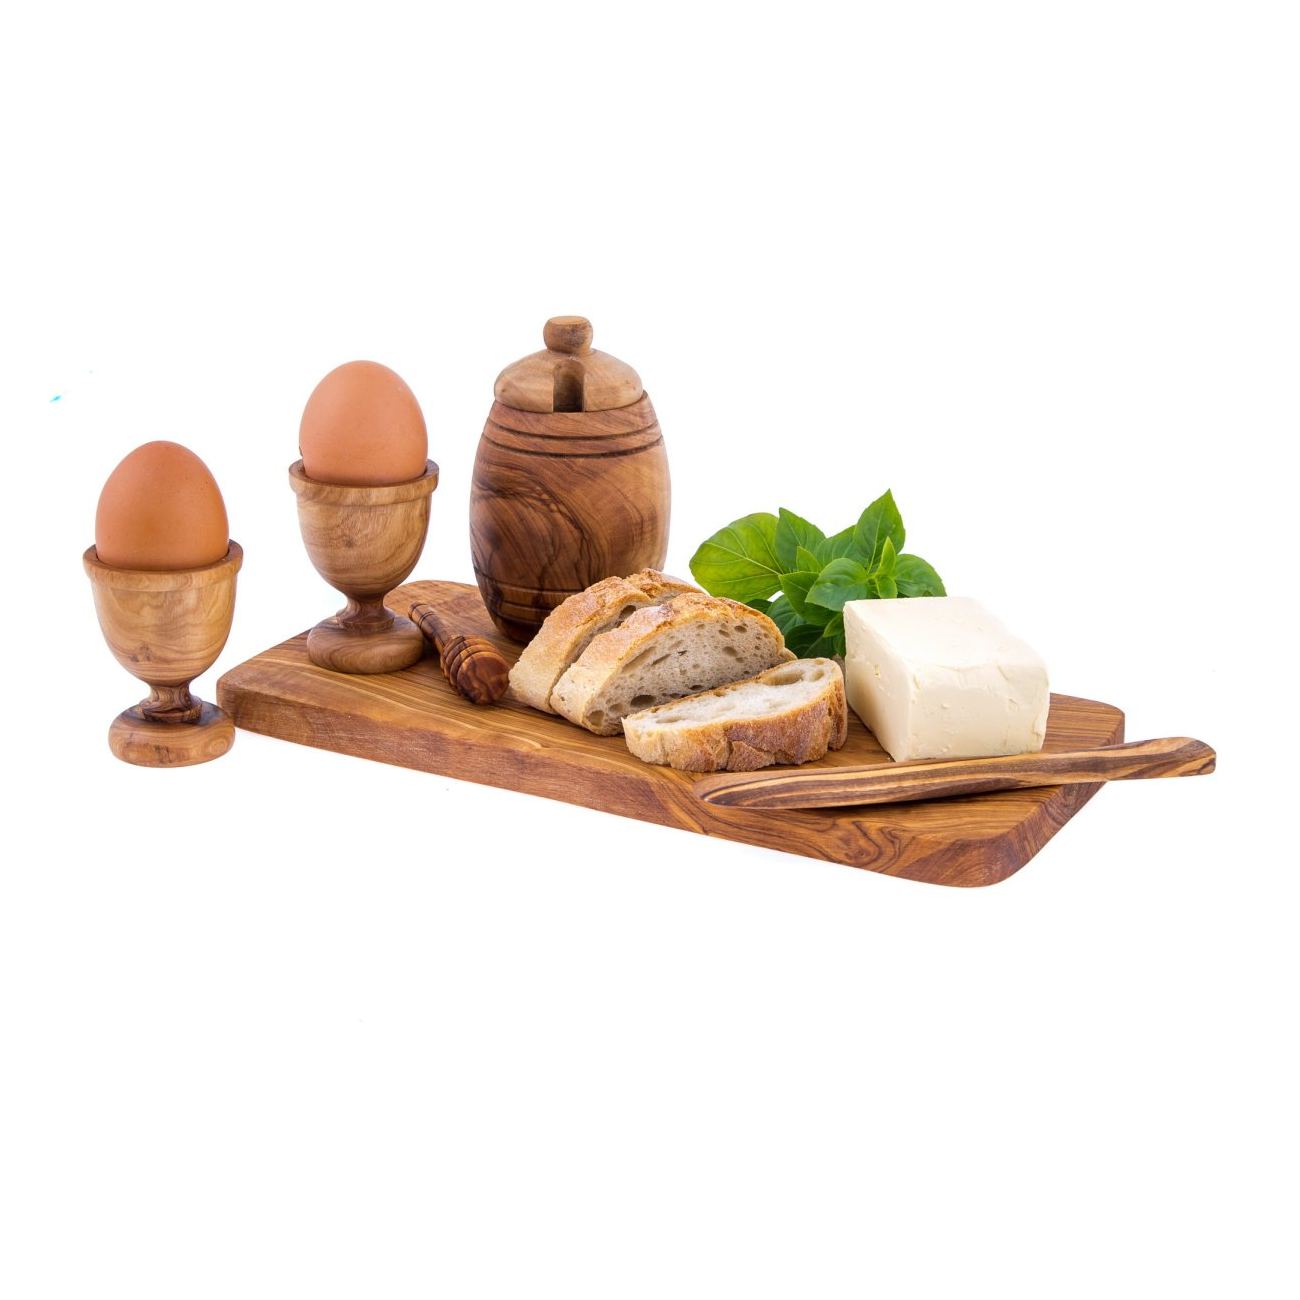 Olive Wood Egg Holder